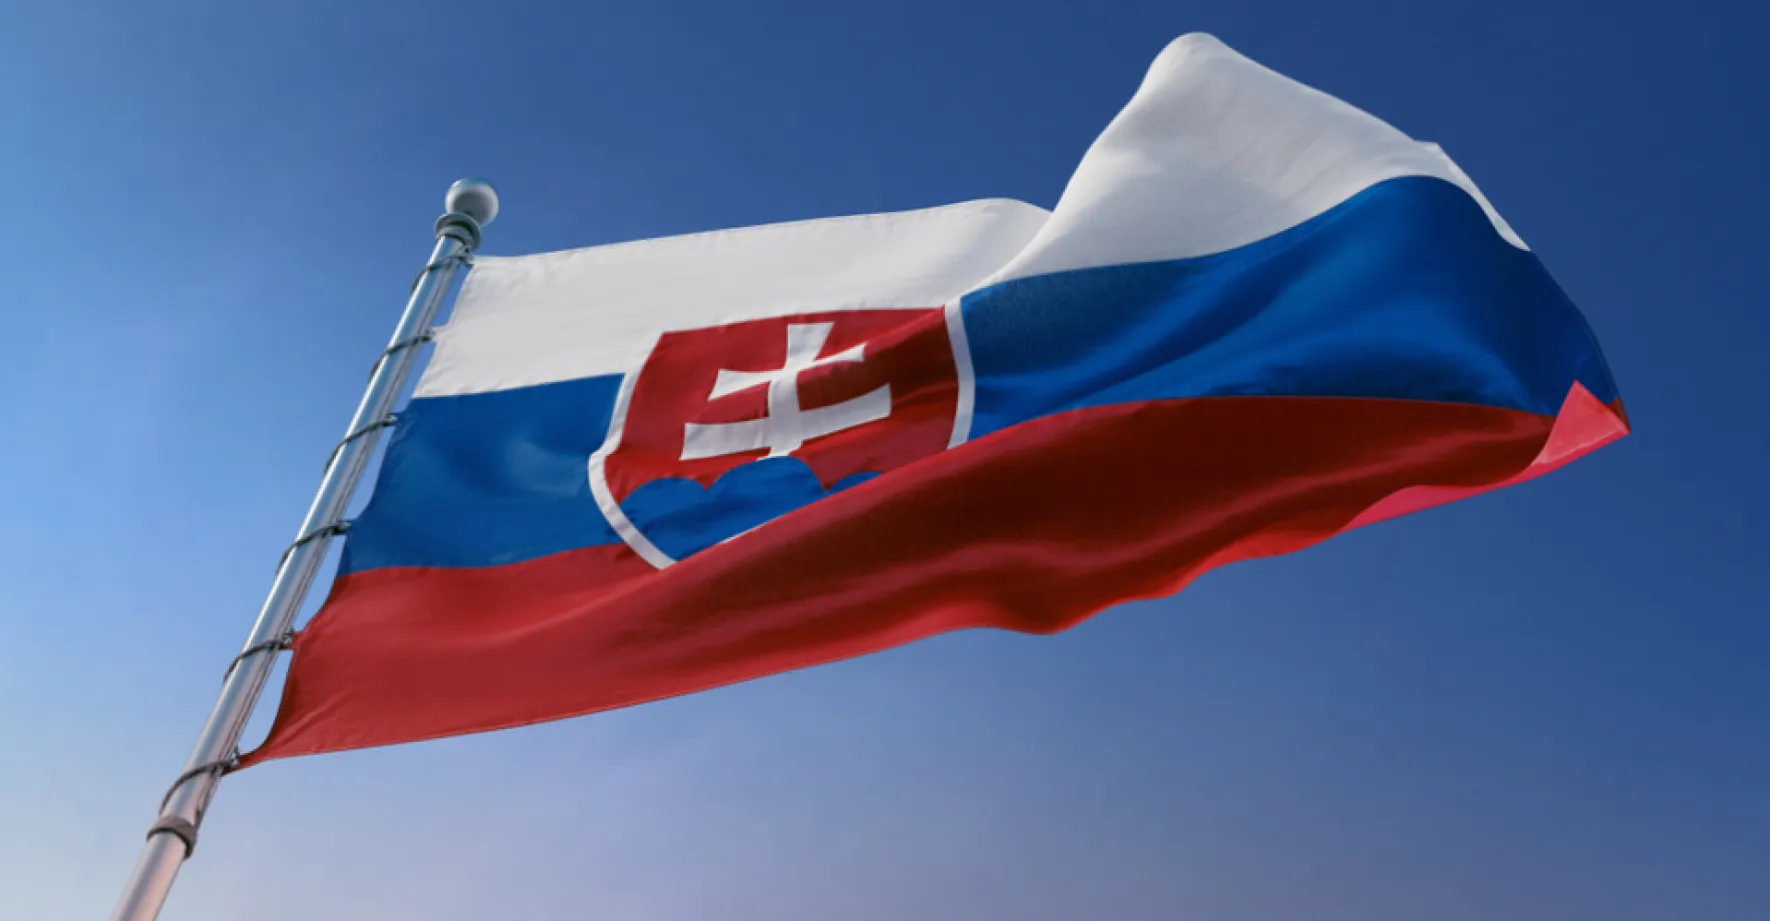 Slováci drtivě odmítli kontroverzní Istanbulskou úmluvu